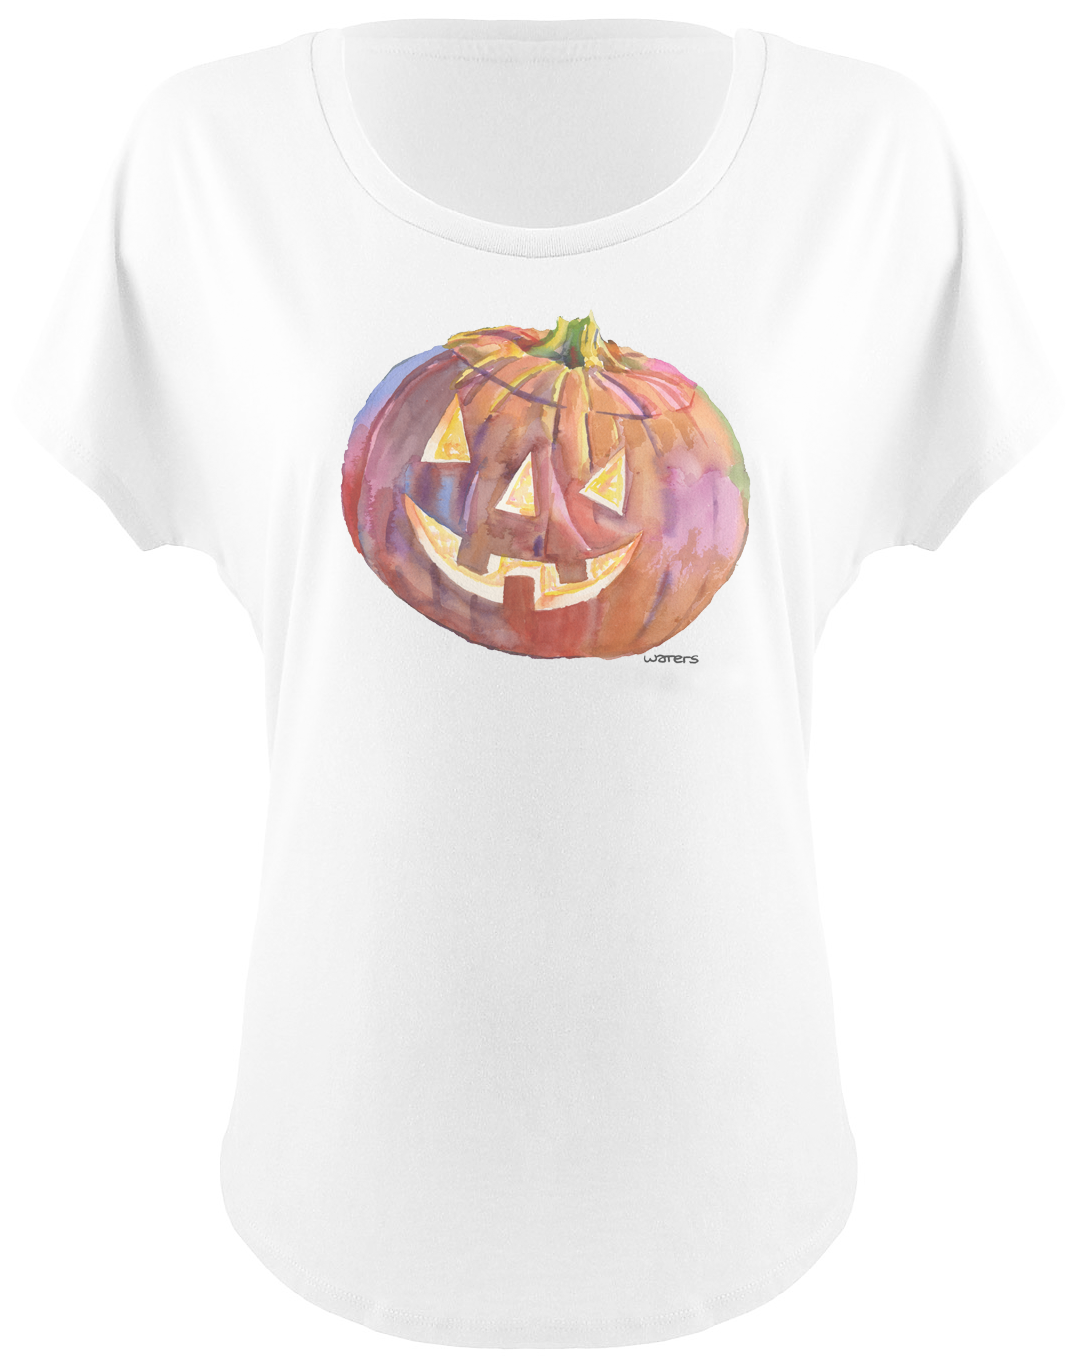 T-shirt | Pumpkin